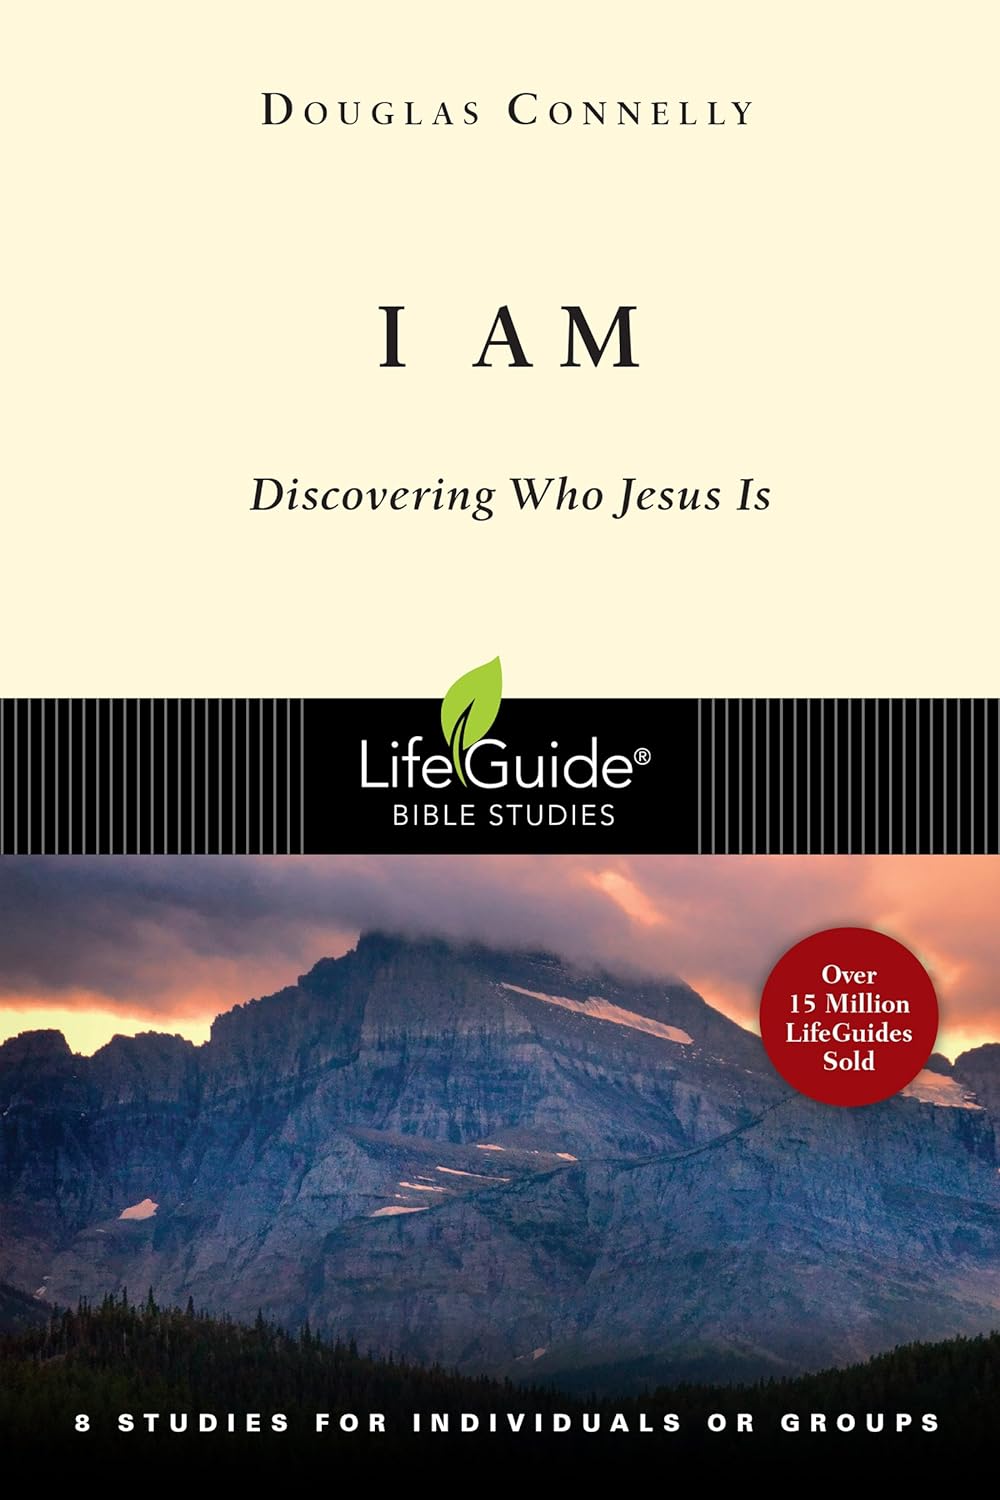 Lifeguide Bible Study - I Am